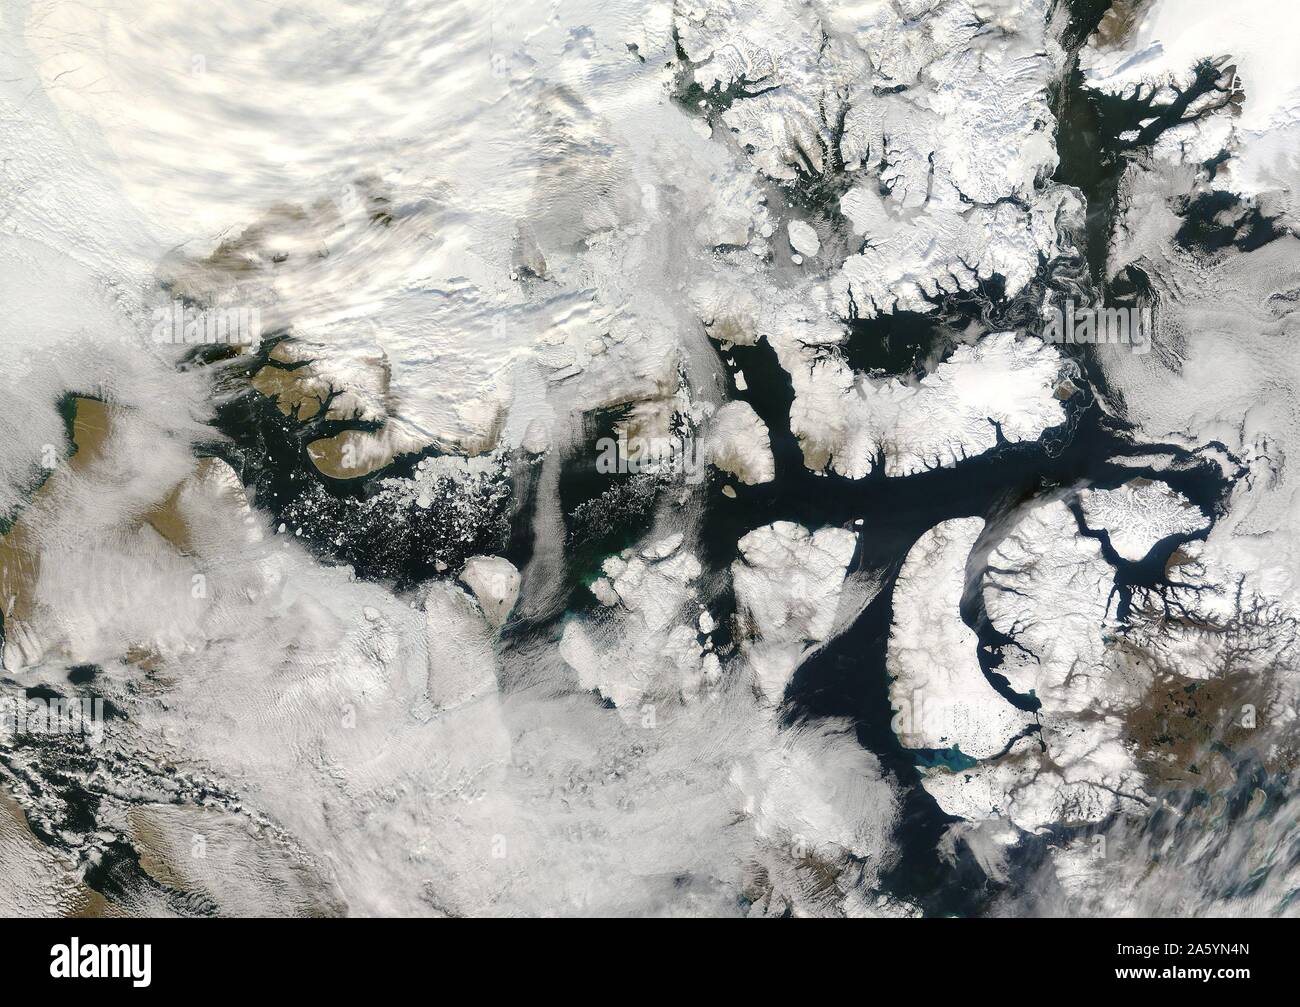 Passaggio a Nord Ovest 2007. Il passaggio a nord ovest era privo di ghiaccio per la prima volta dal record di satellite ha iniziato a. Il passaggio è un percorso diretto da Europa in Asia per le navi che viaggiano attraverso l'Artico. La NASA Foto Stock